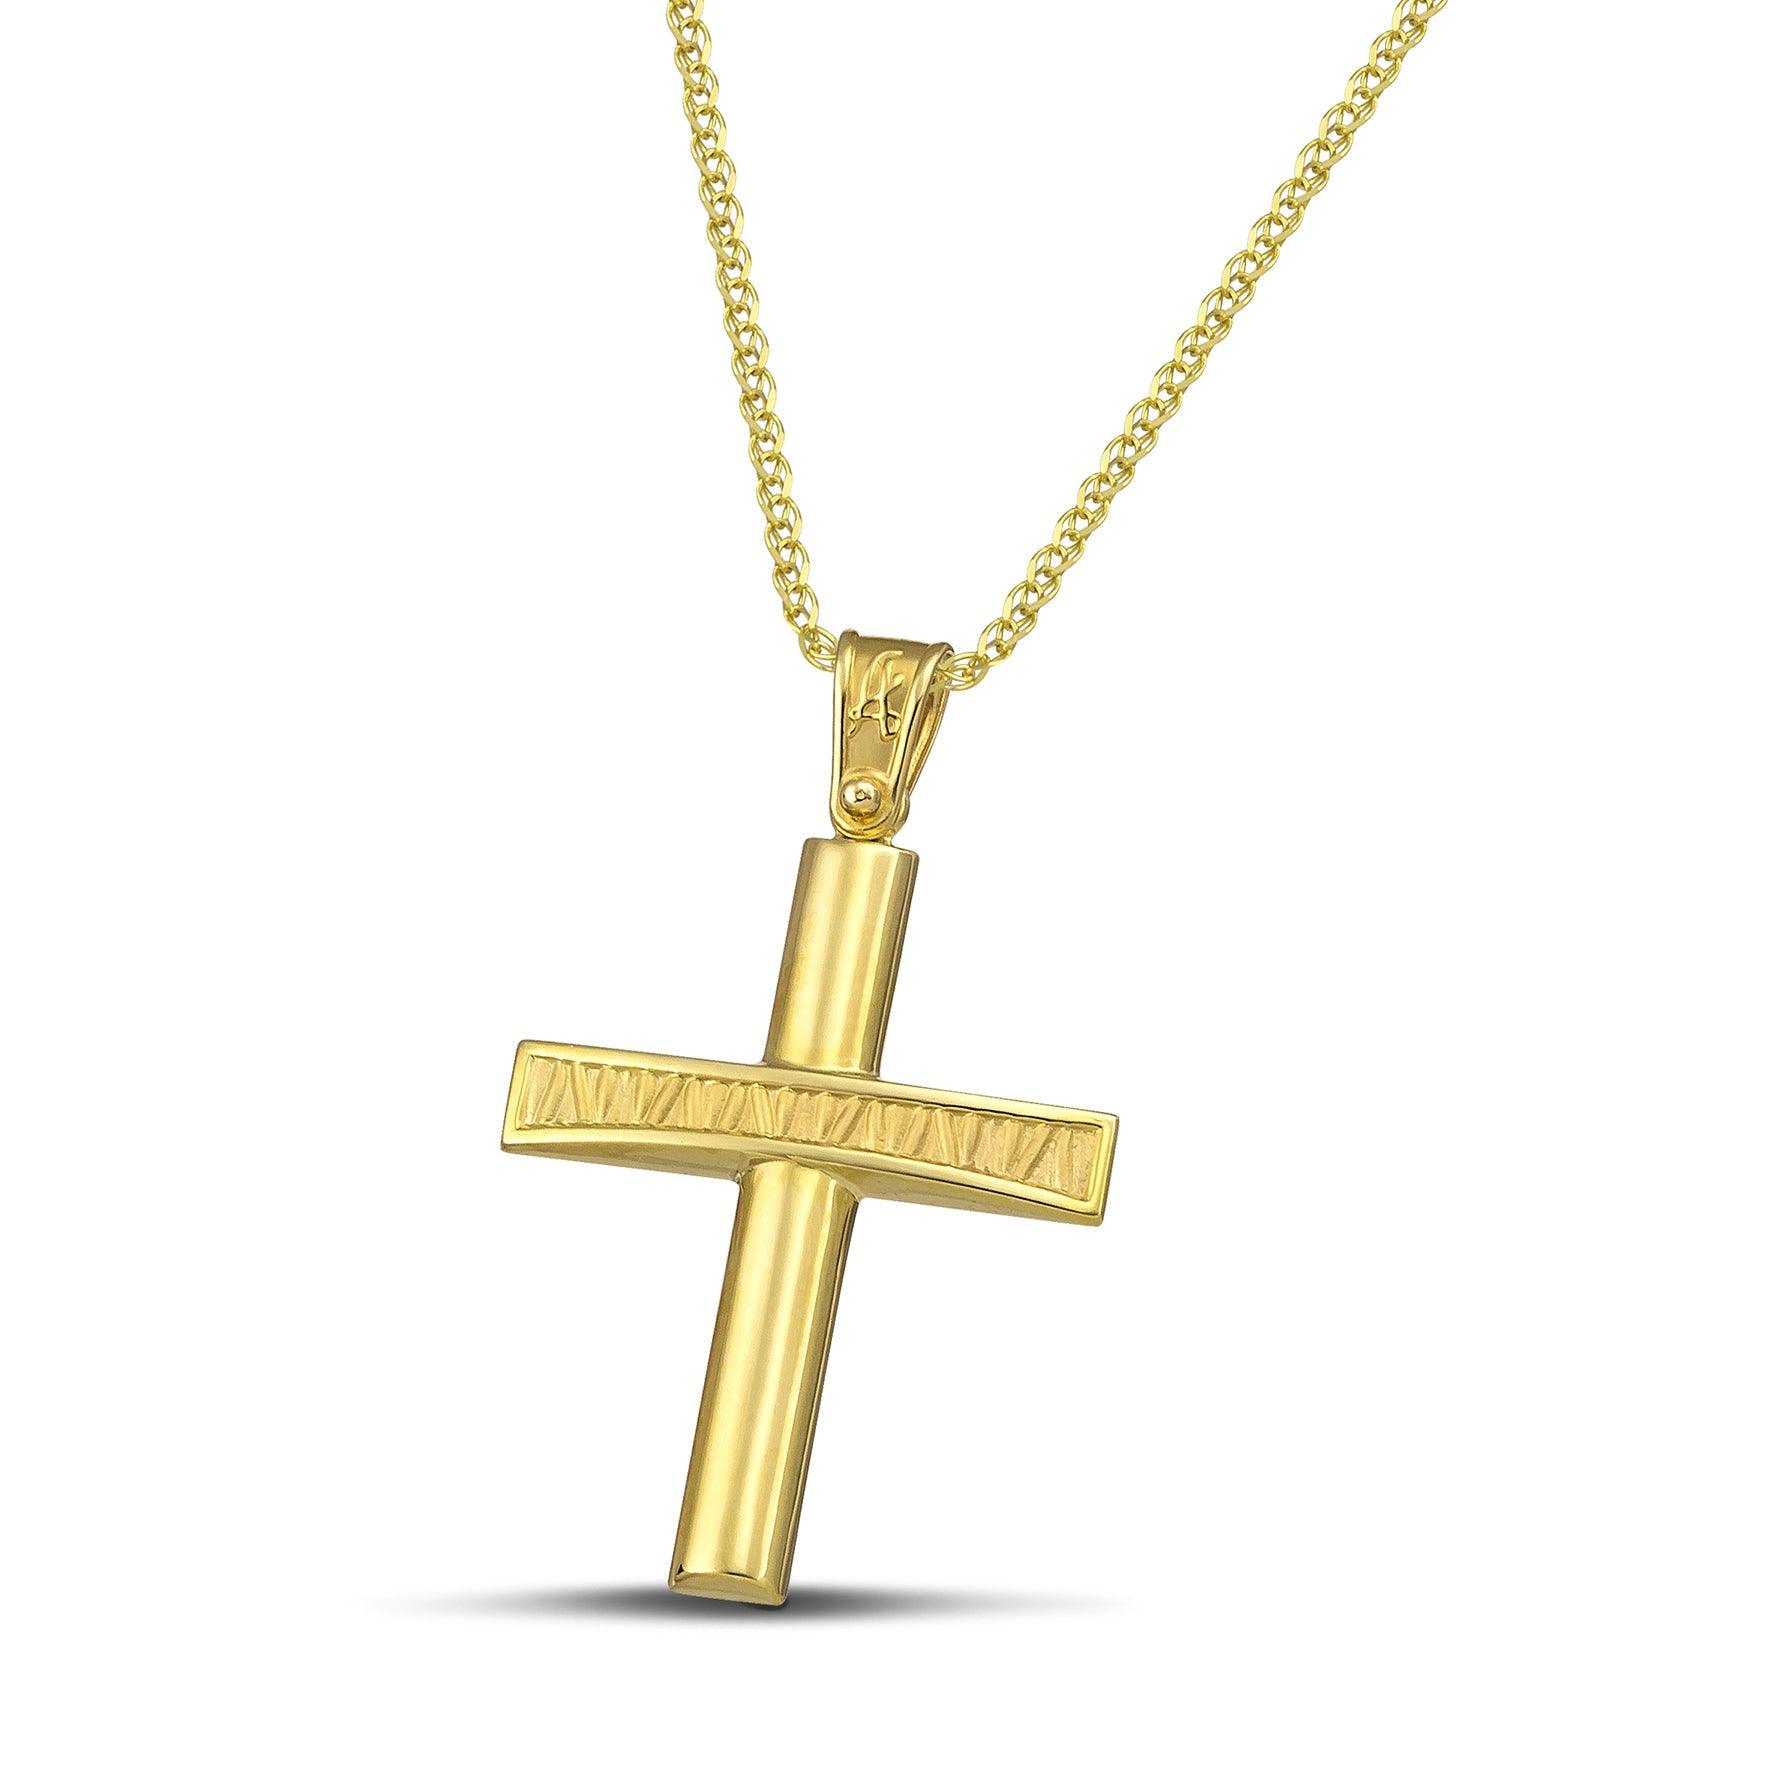 Χρυσός σταυρός βάπτισης  Κ14 ανάγλυφος για κορίτσι. Φορεμένος σε πλεκτή αλυσίδα. 